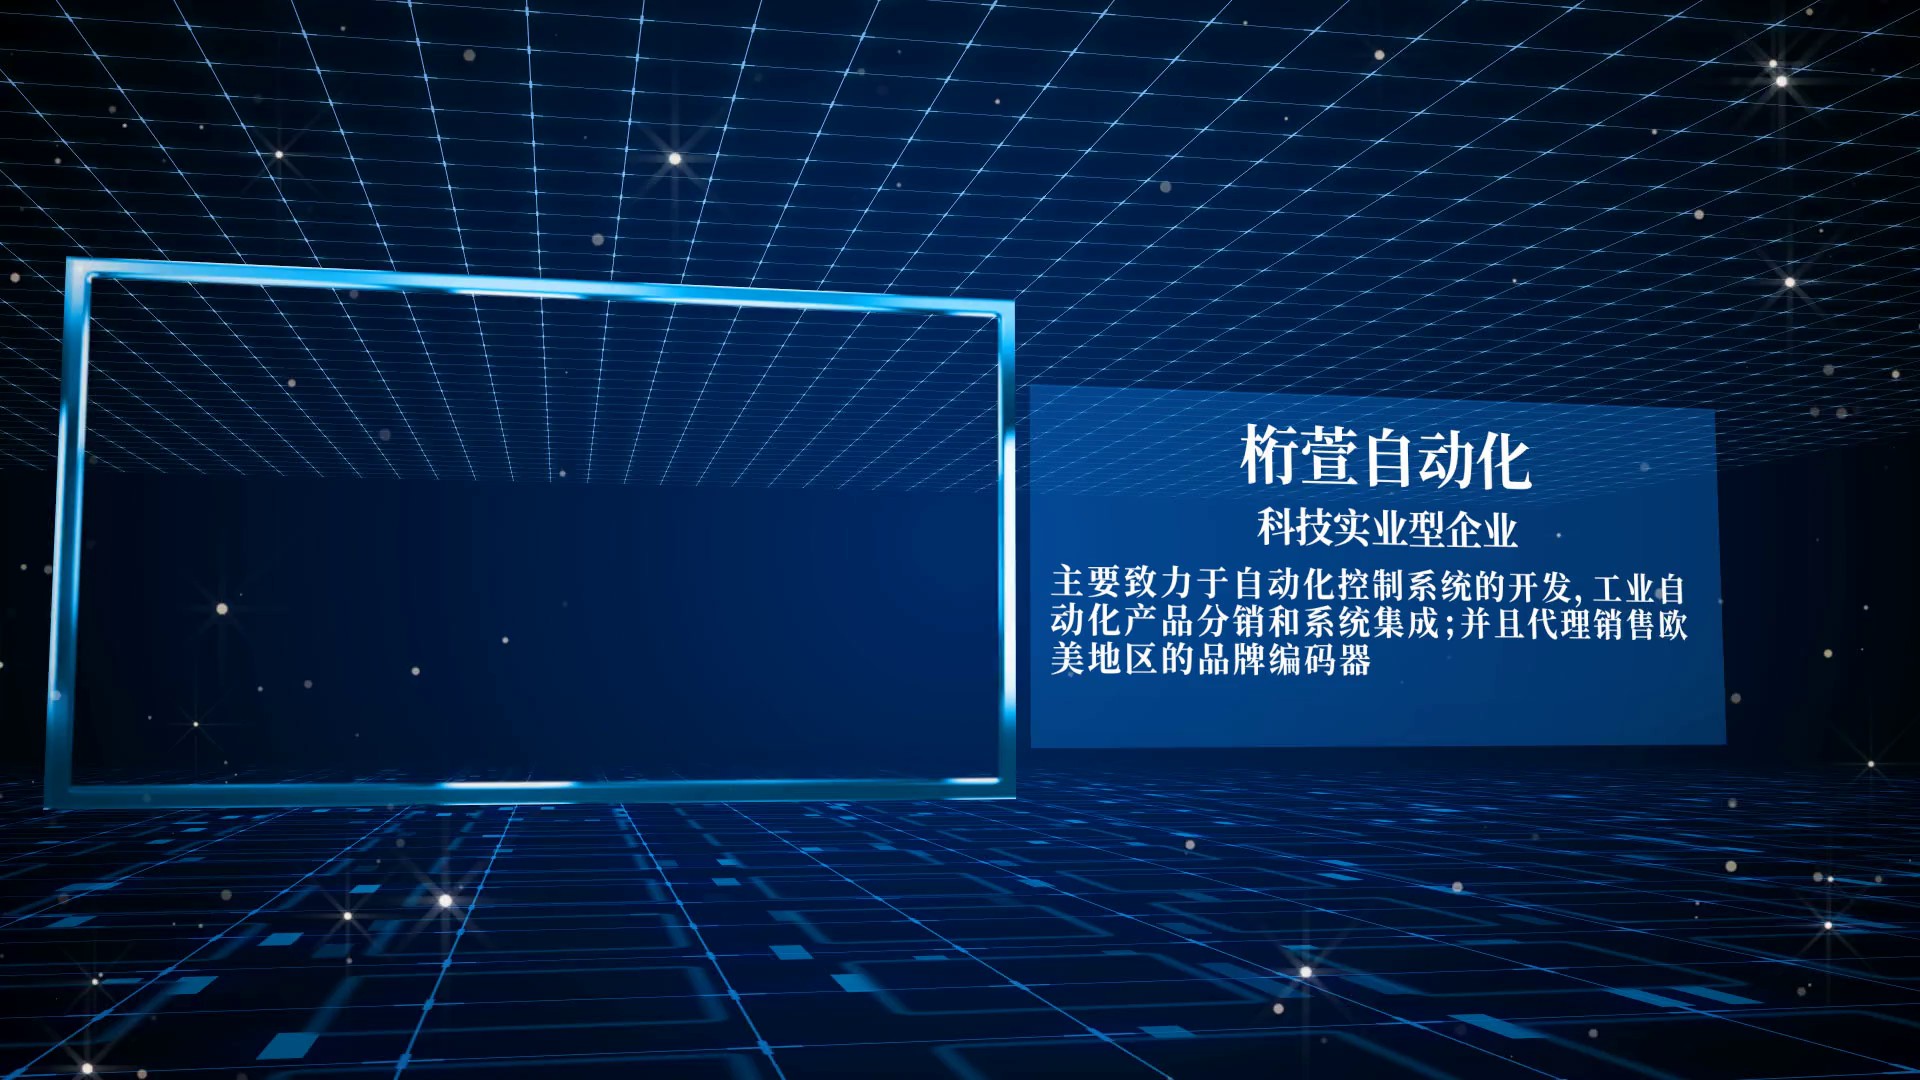 上海光电多圈绝对值编码器批发,光电多圈绝对值编码器